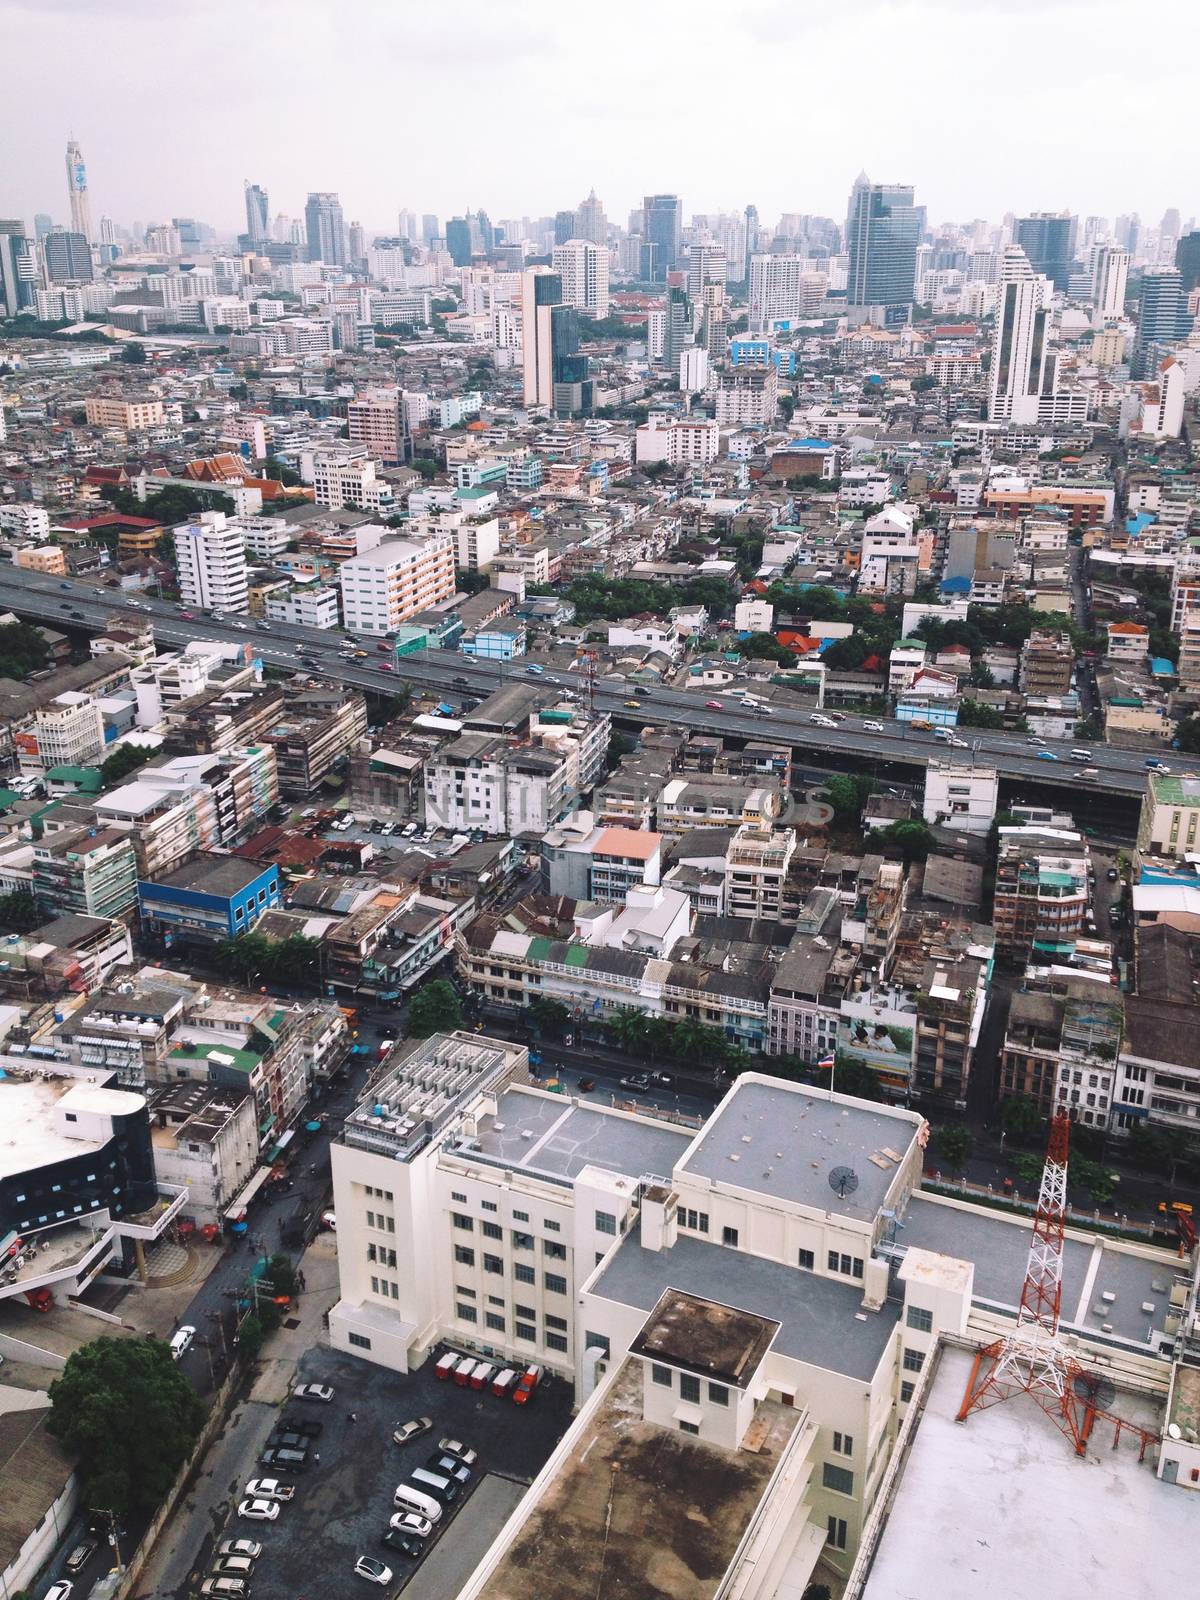 High Angle View of Bangkok city,Thailand